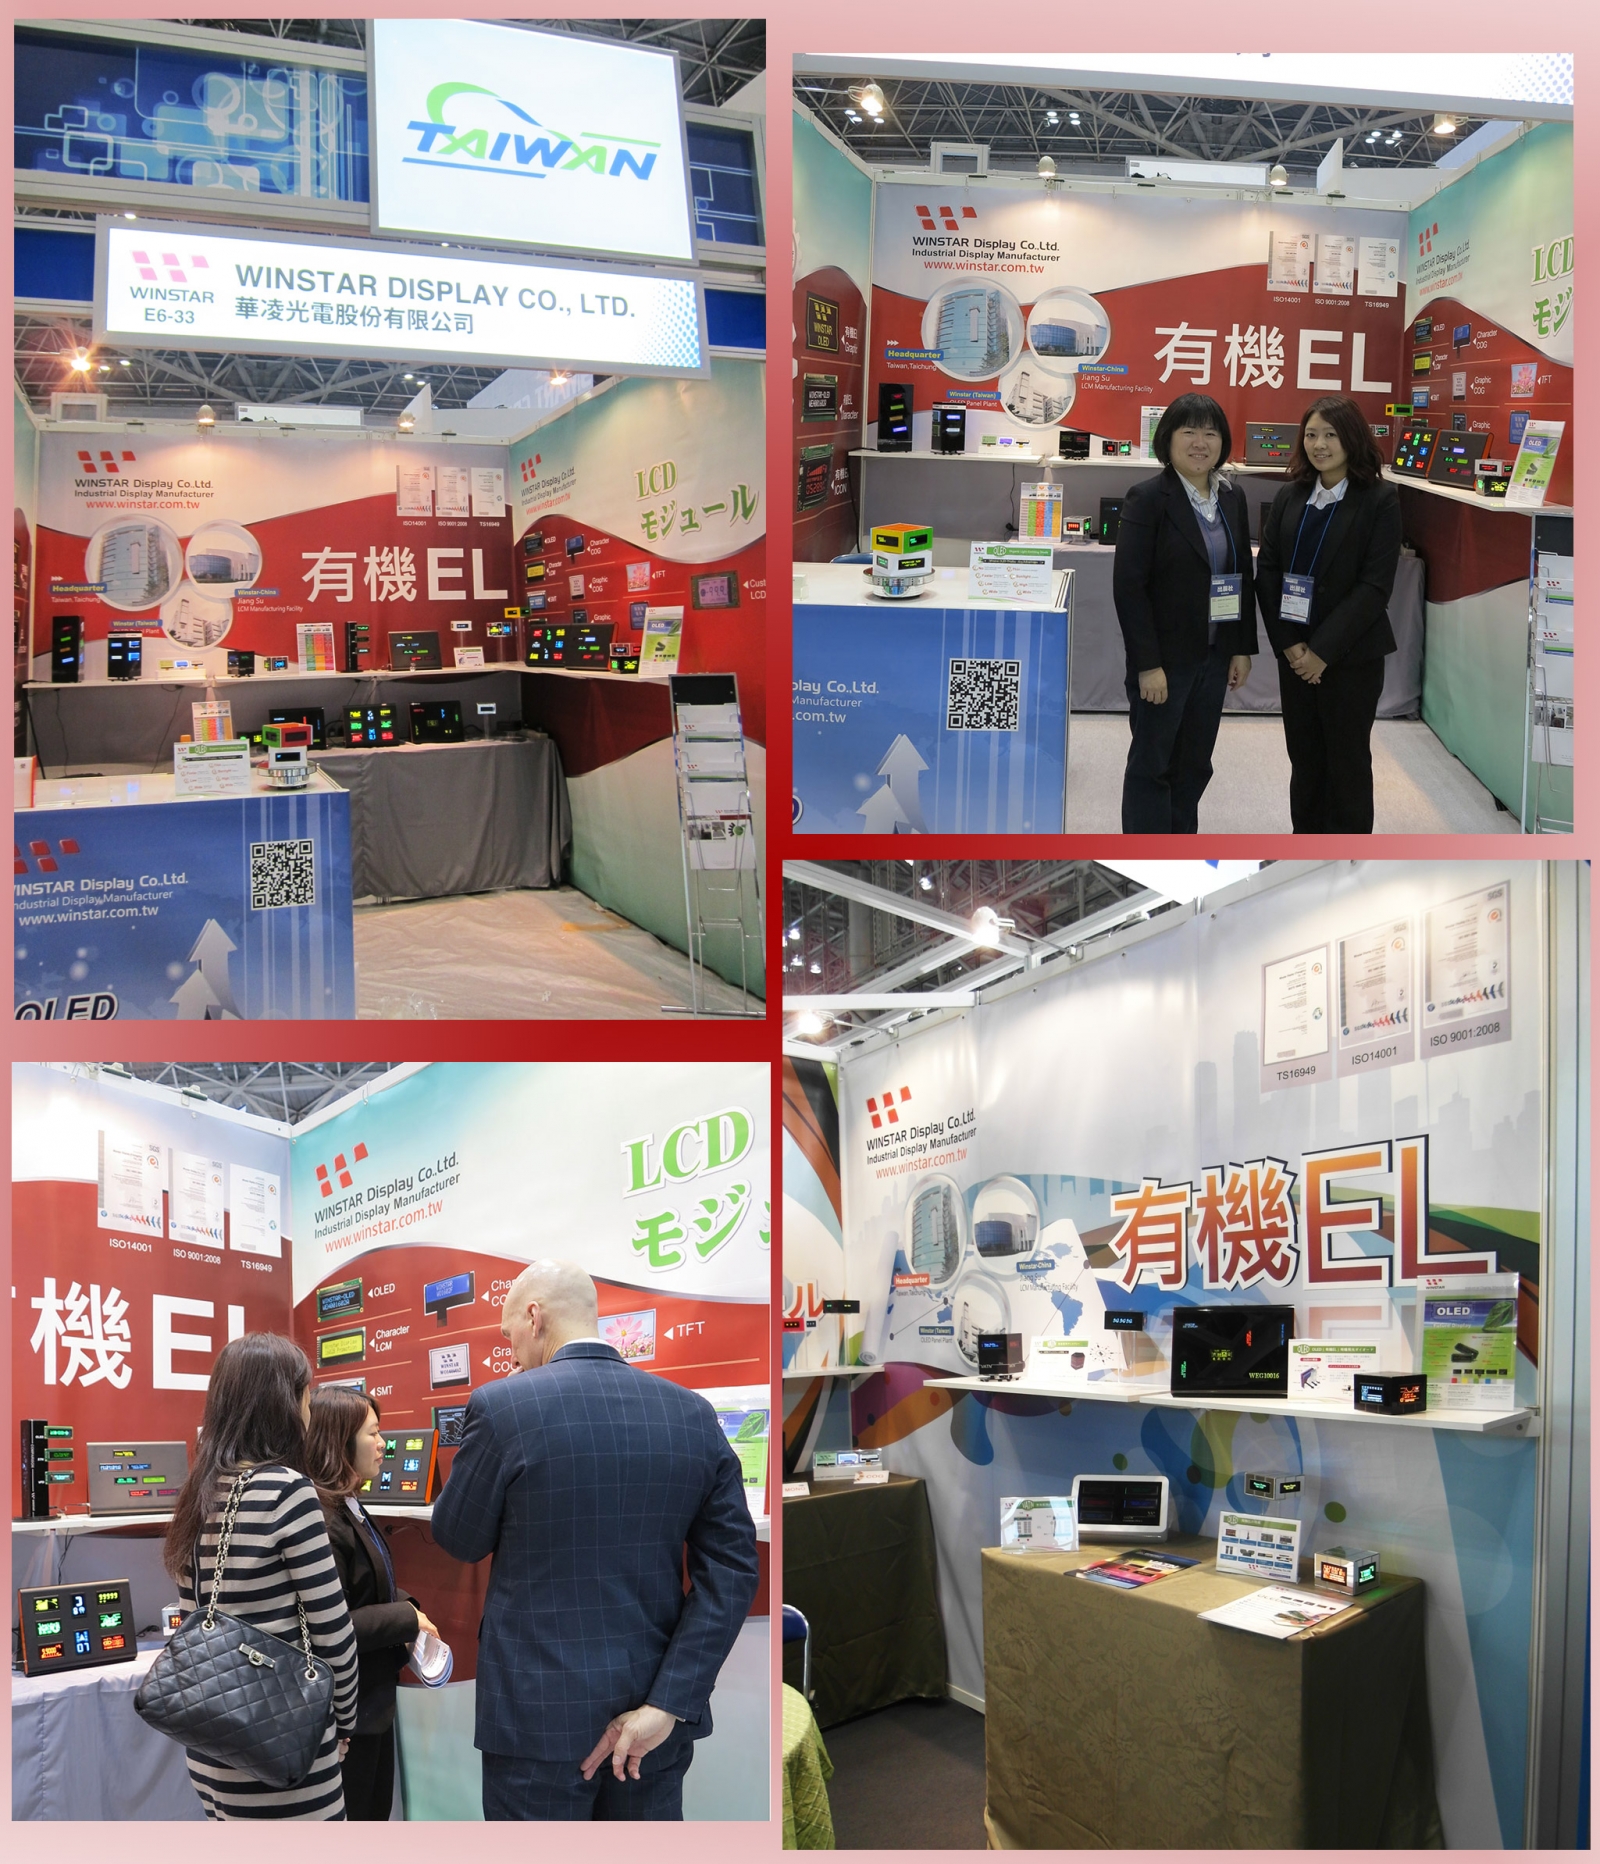 2014 日本國際智慧電網技術展 (Smart Grid Expo Japan 2014) - 華凌光電展覽照片